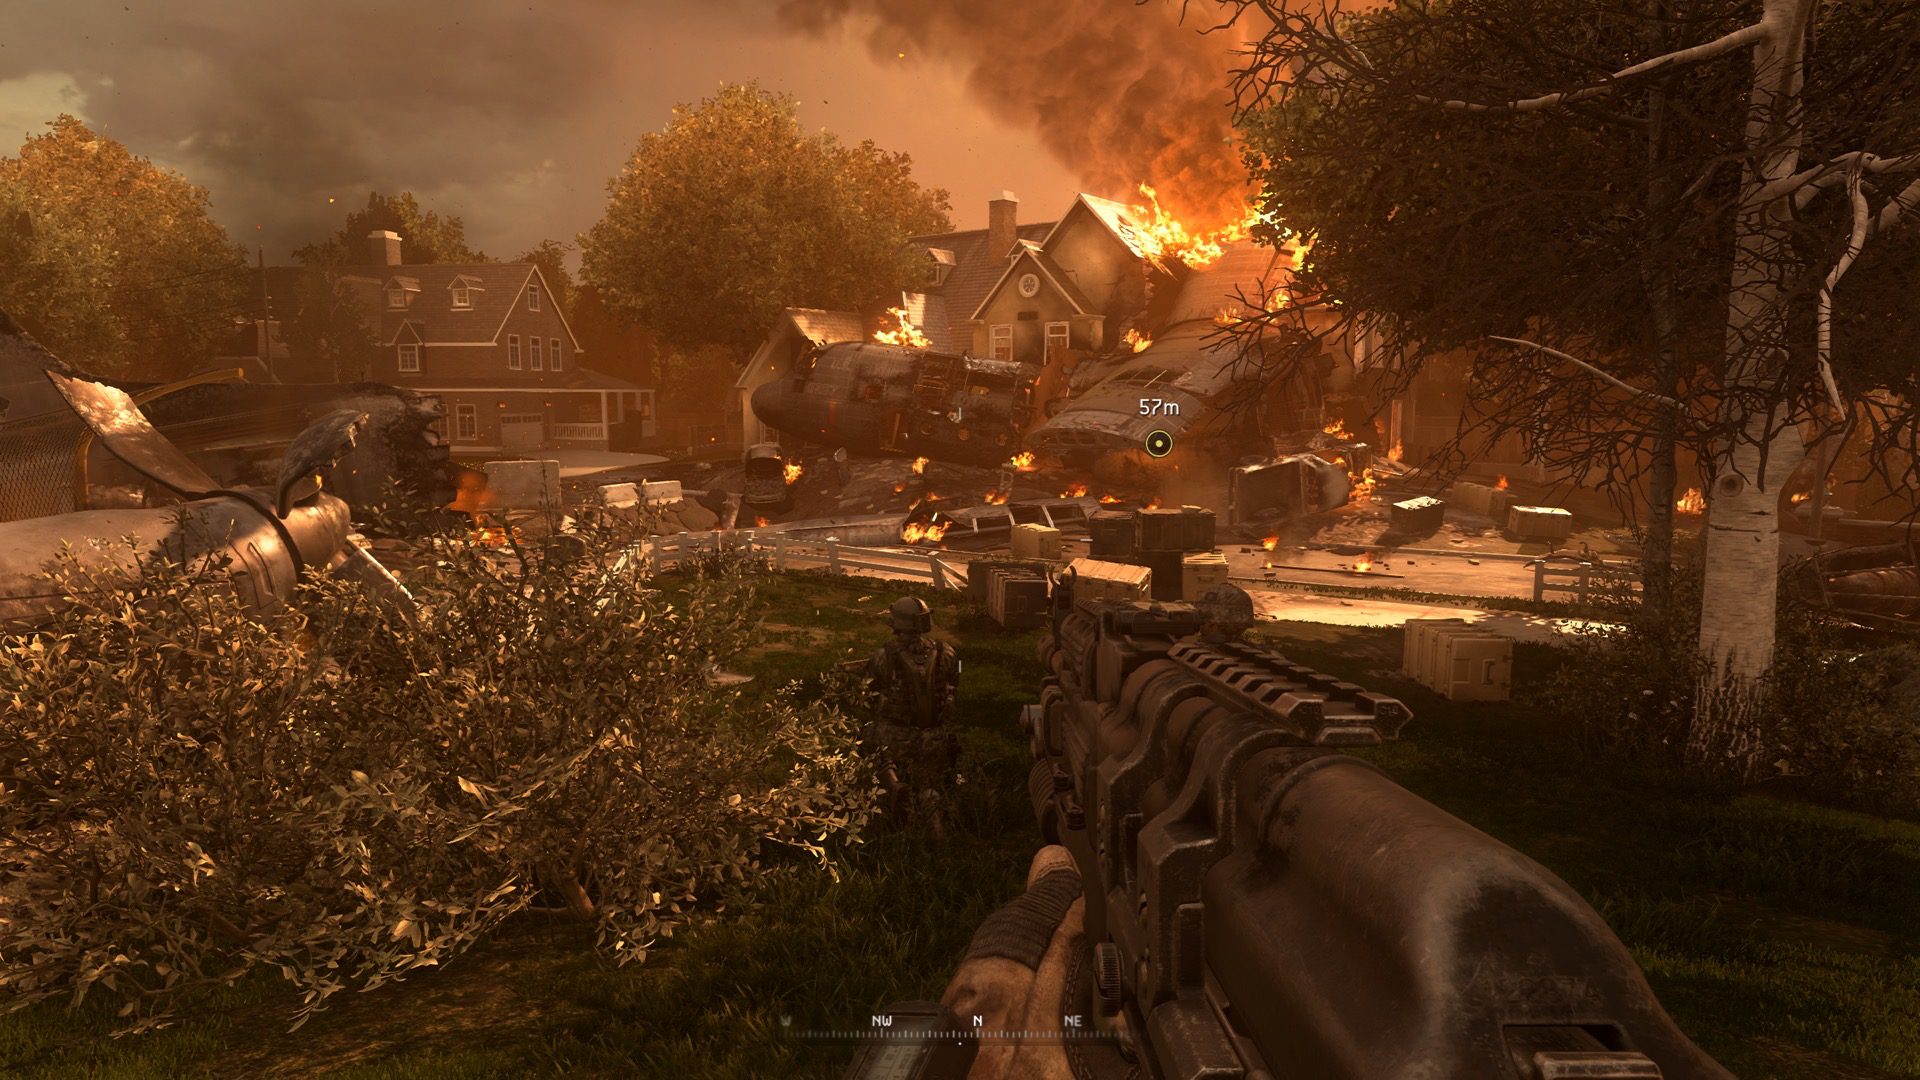 Análisis de Call of Duty Modern Warfare 2 Remastered - Posiblemente la campaña más épica de todos los tiempos. Analizamos Call of Duty Modern Warfare 2 Remastered.